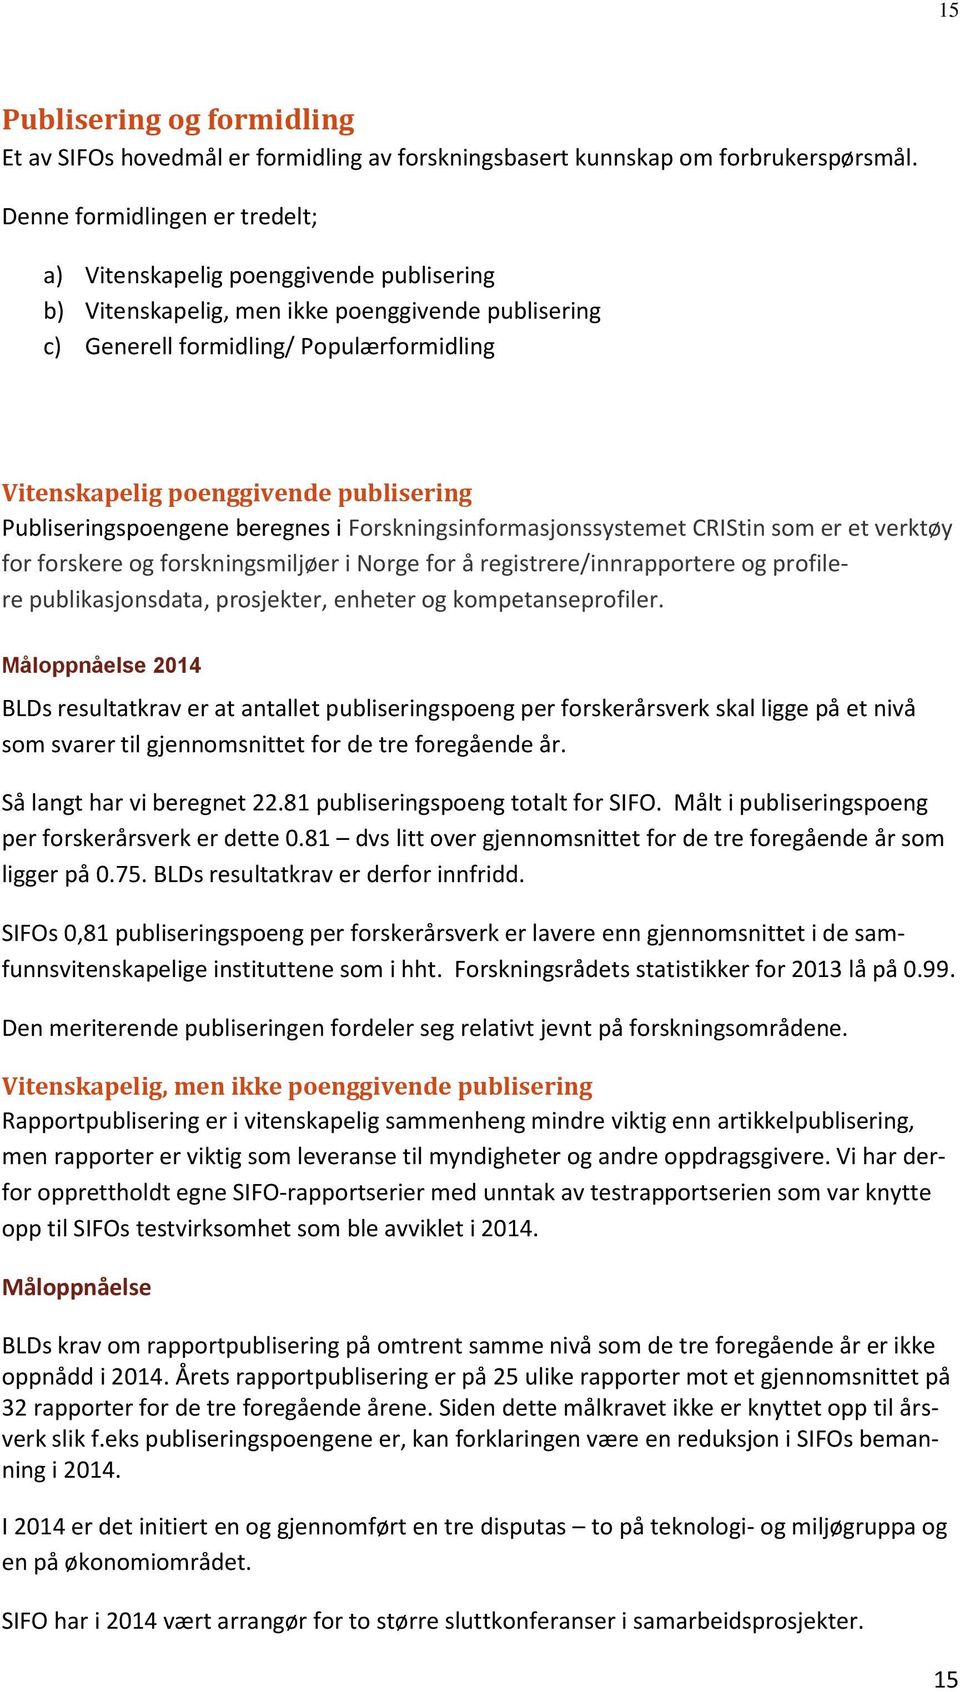 publisering Publiseringspoengene beregnes i Forskningsinformasjonssystemet CRIStin som er et verktøy for forskere og forskningsmiljøer i Norge for å registrere/innrapportere og profilere